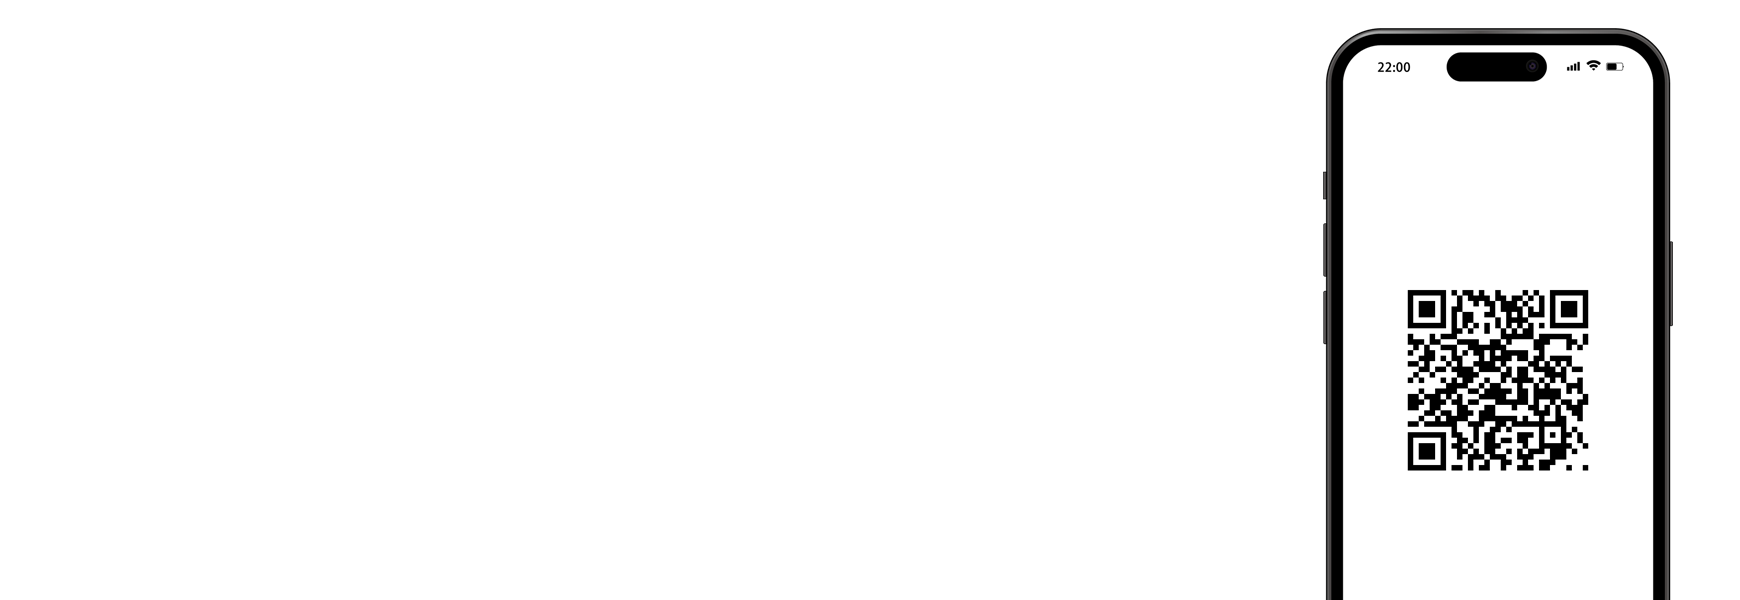 Web抽選キャンペーンシステム-begame.jp